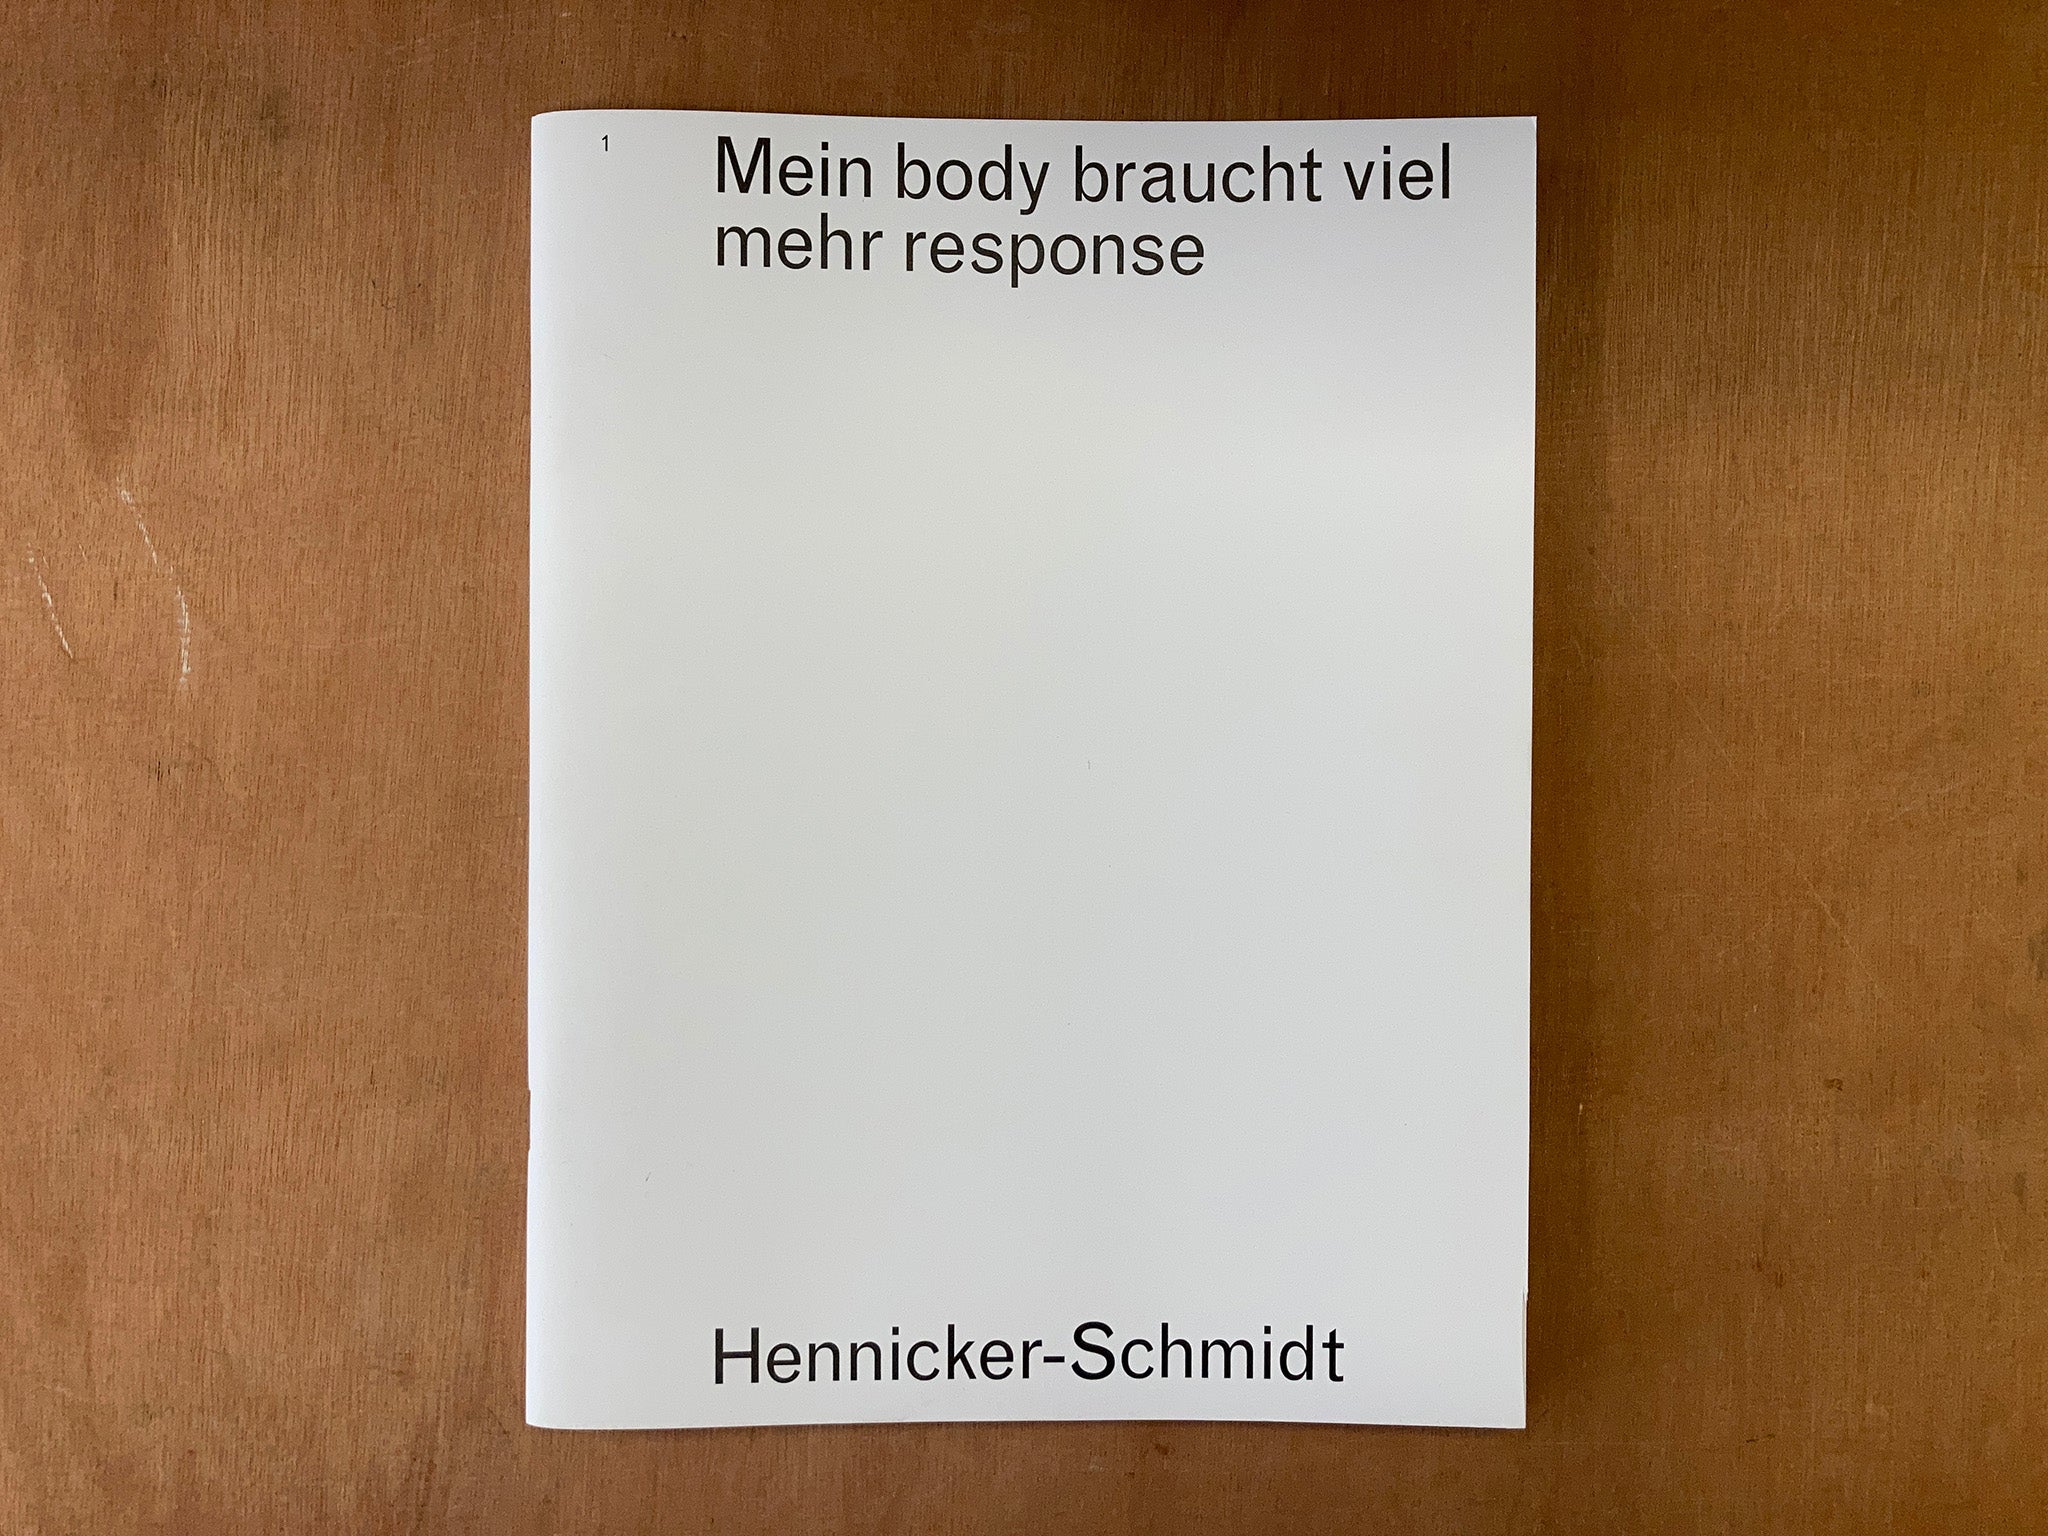 MEIN BODY BRAUCHT VIEL MEHR RESPONSE by Melina Hennicker and Michael Schmidt